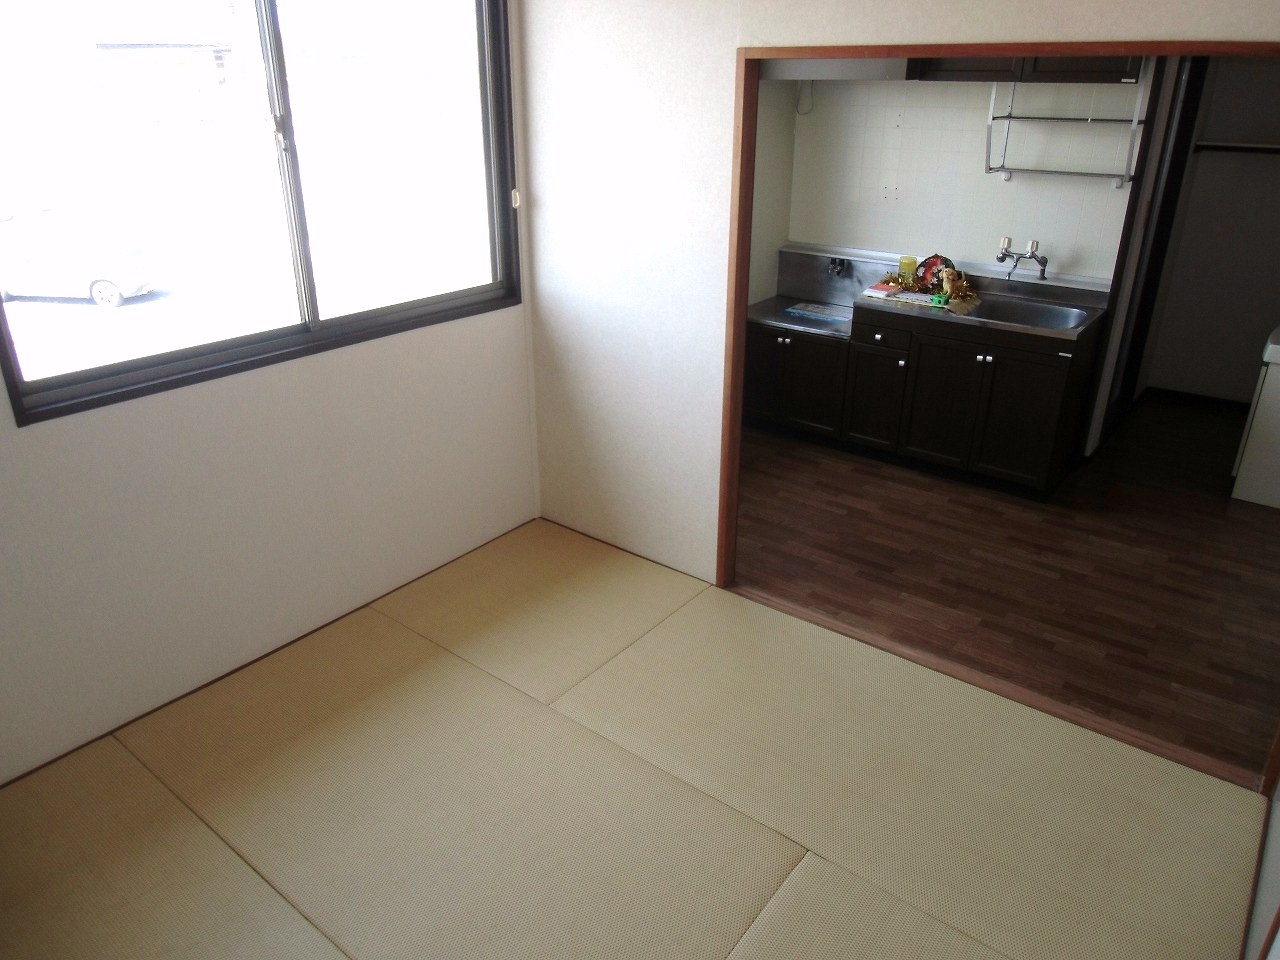 Living and room. Akarui room ^^